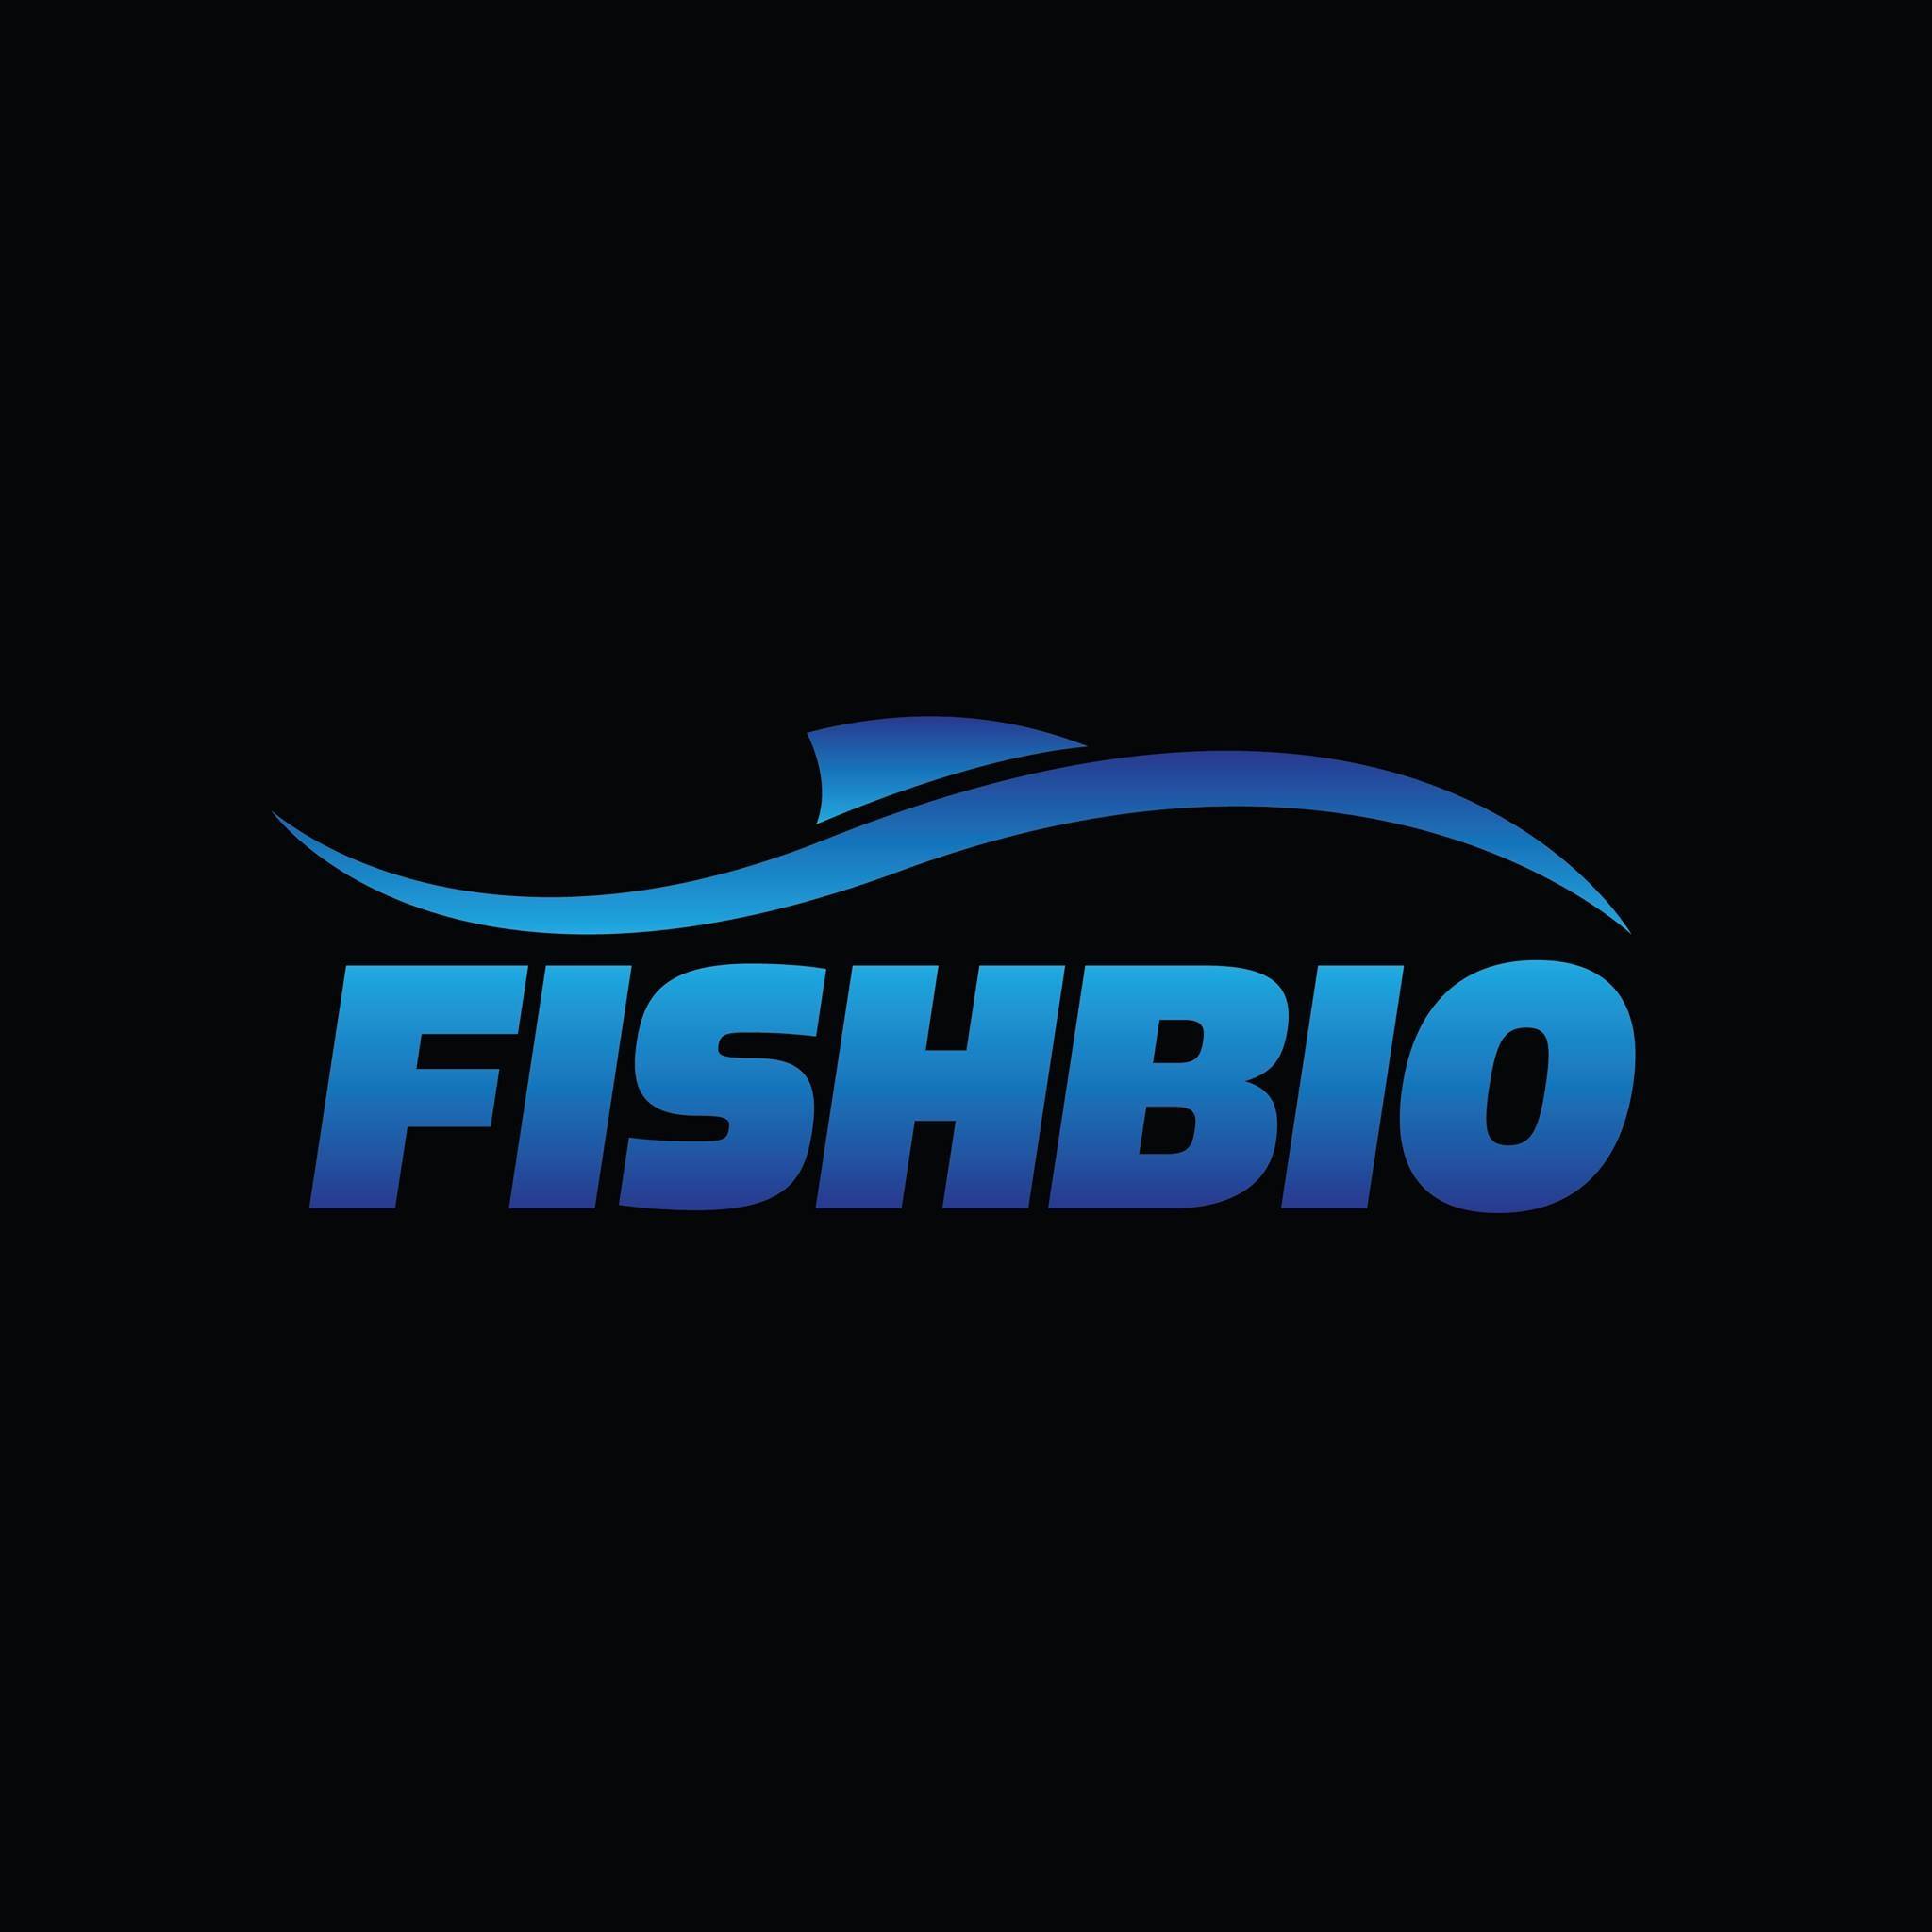 Company logo of FISHBIO